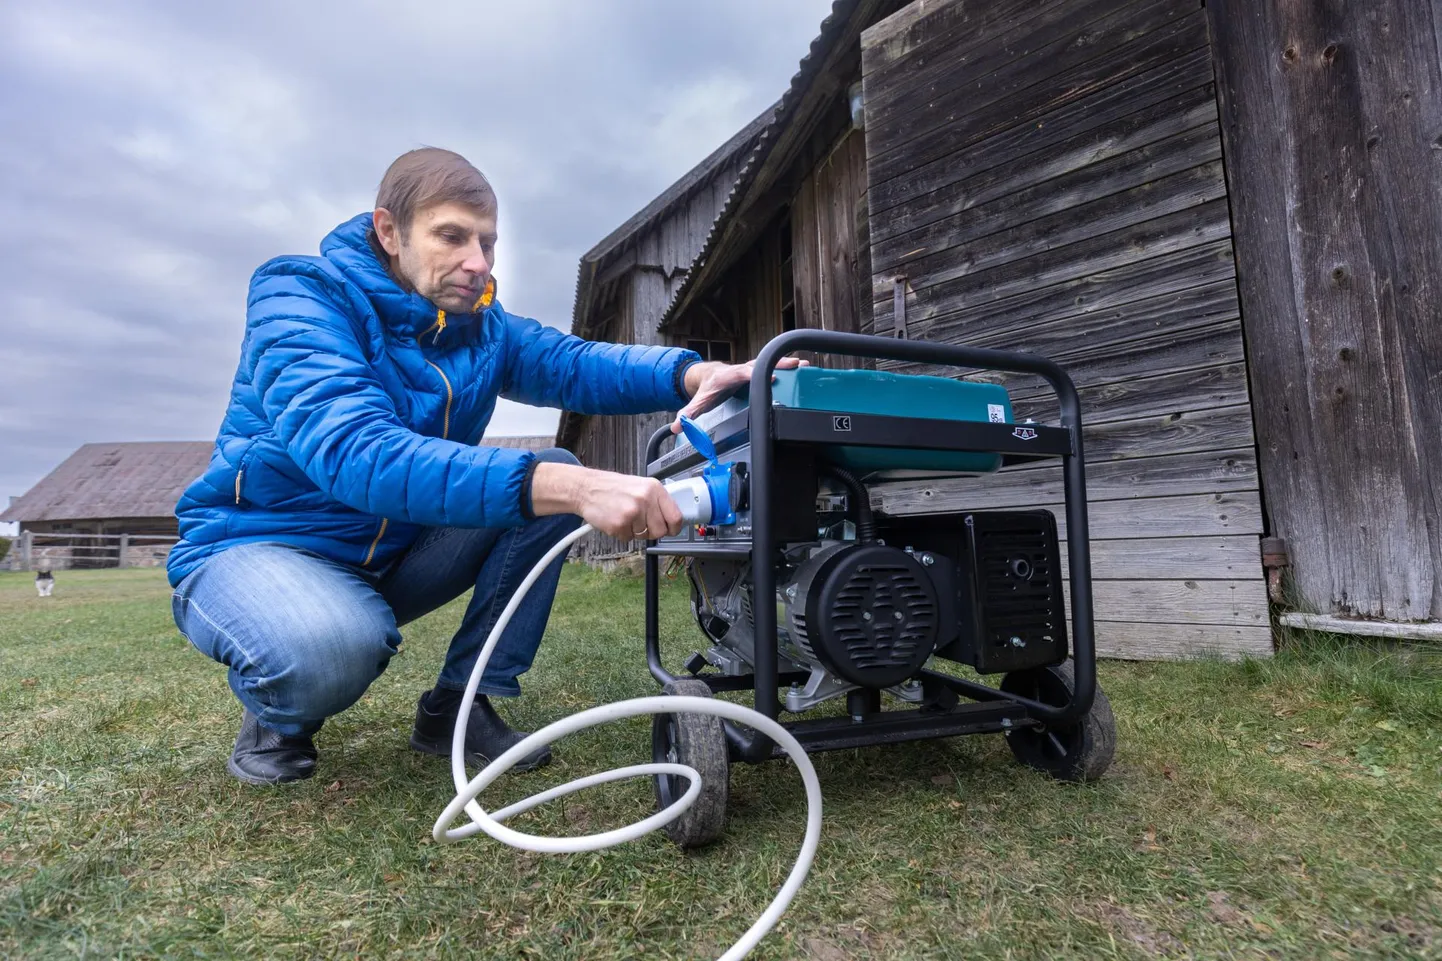 Põhja-Sakala valla Aimla küla elanik Jüri Sulg ostis endale juba mitu aastat tagasi generaatori, sest tema kodukandis on elektrikatkestused sagedased.